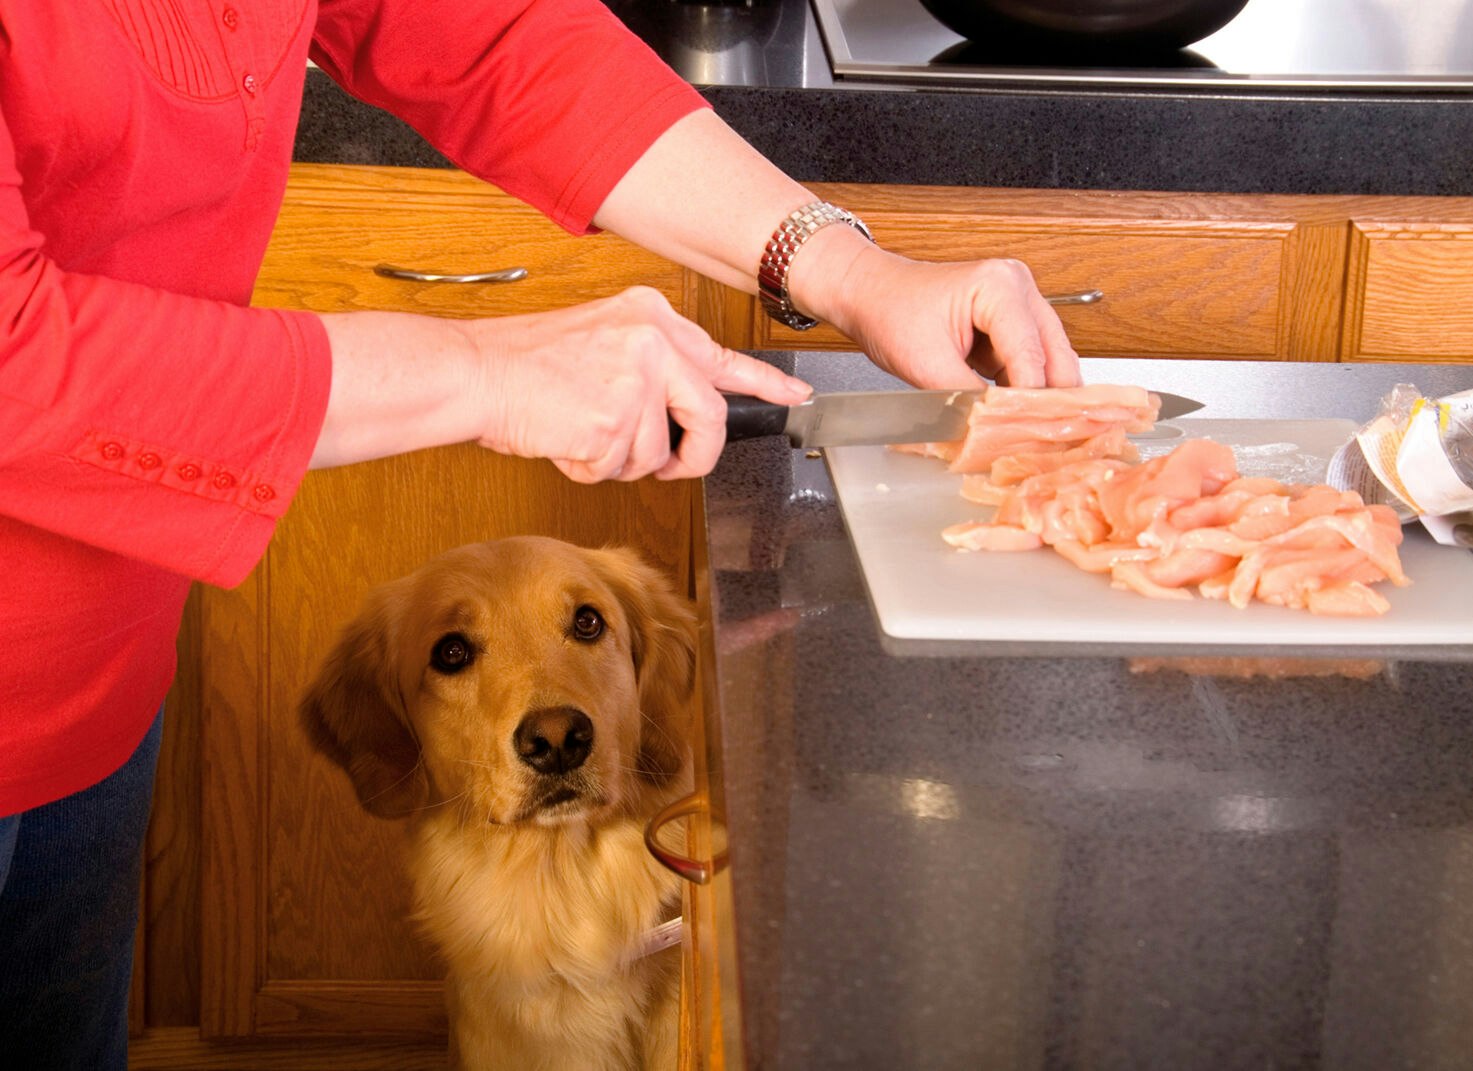 Ein großes Problem bei BARF-Ernährung von Hunden und Katzen ist die mögliche Gefährdung der Gesundheit des Menschen beim Umgang mit rohem Fleisch.